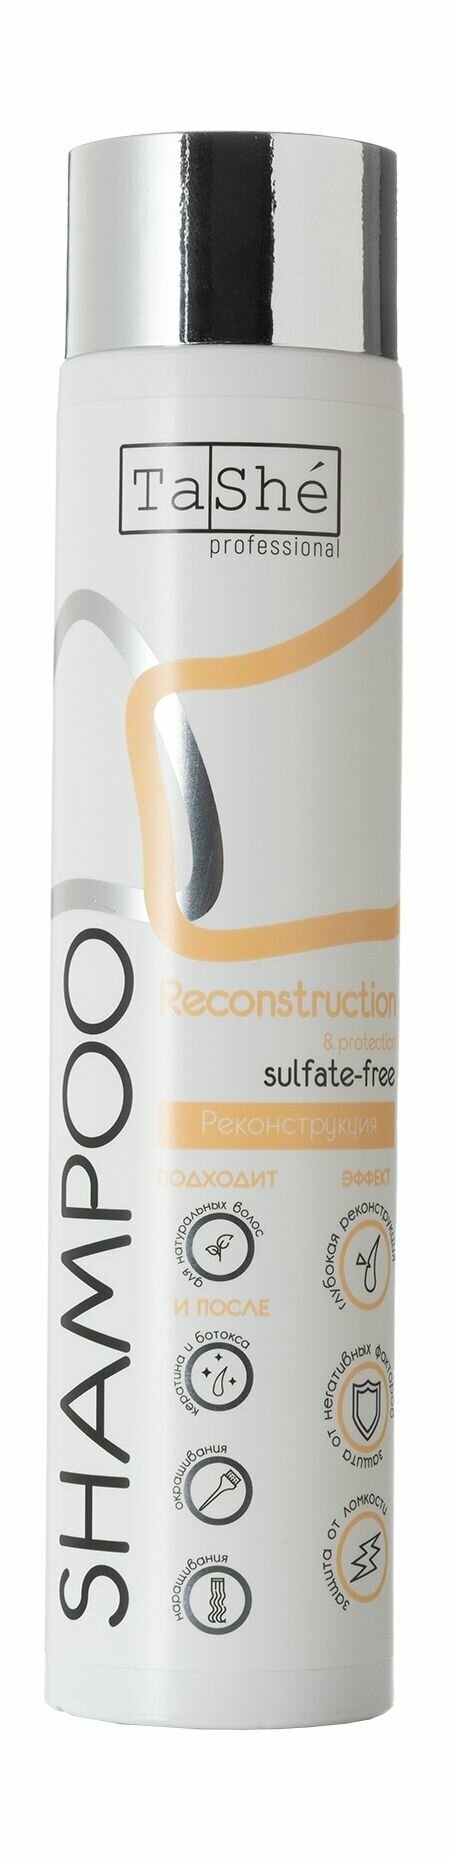 Реконструирующий бессульфатный шампунь для волос / Tashe Professional Reconstruction and Protection Sulfate-Free Shampoo